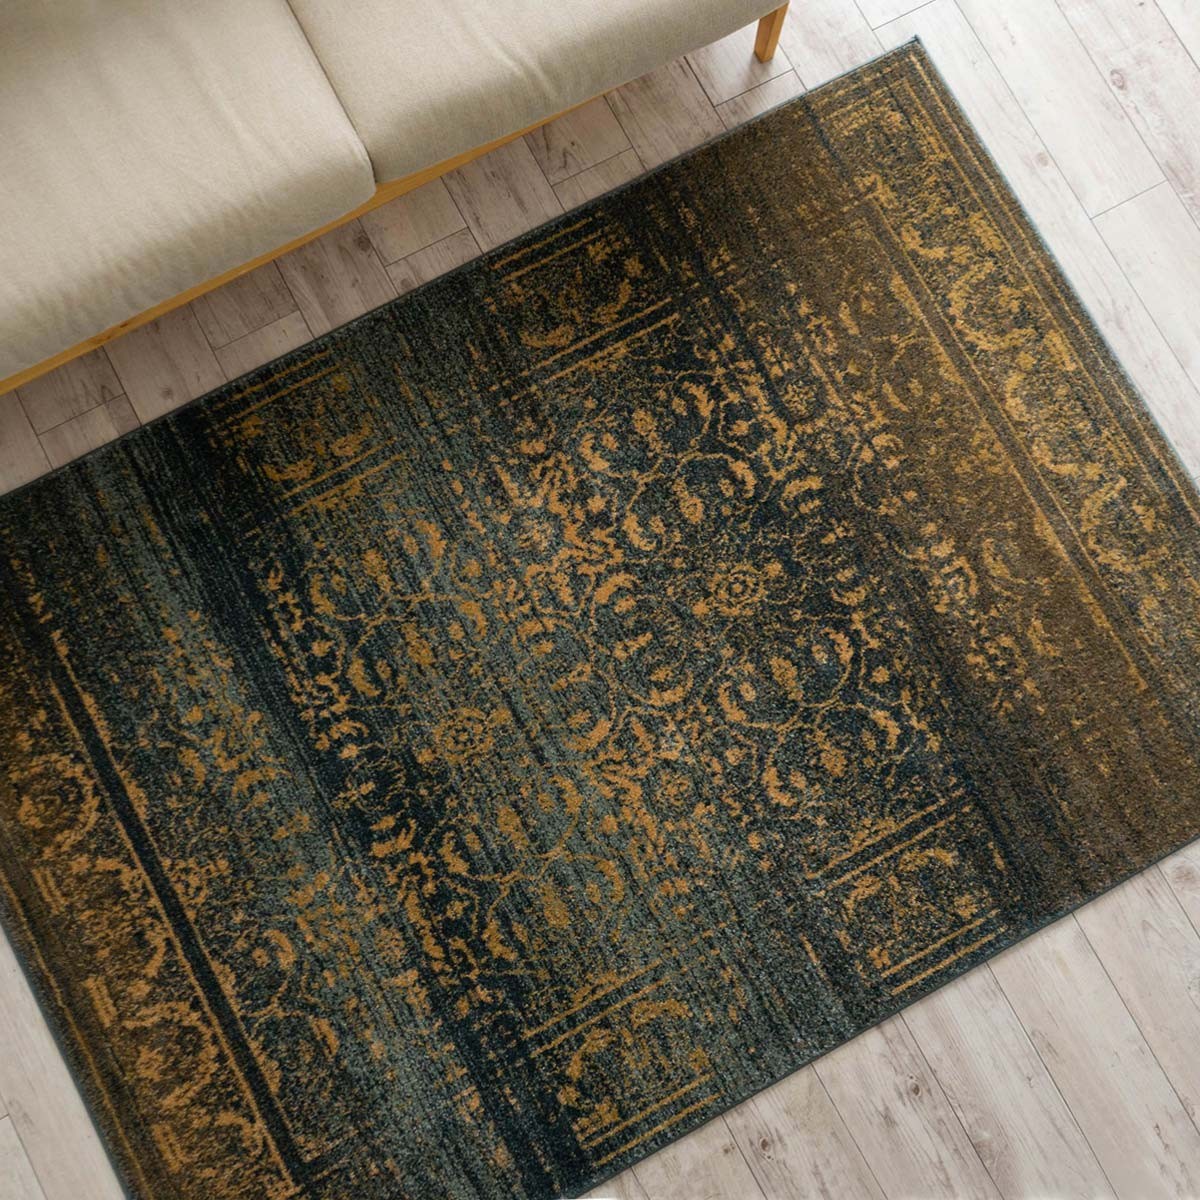 ラグ 1畳 絨毯 アンティーク 風 100×150 クラッシック 柄 ラグマット トルコ製 送料無料 オールドスタイル